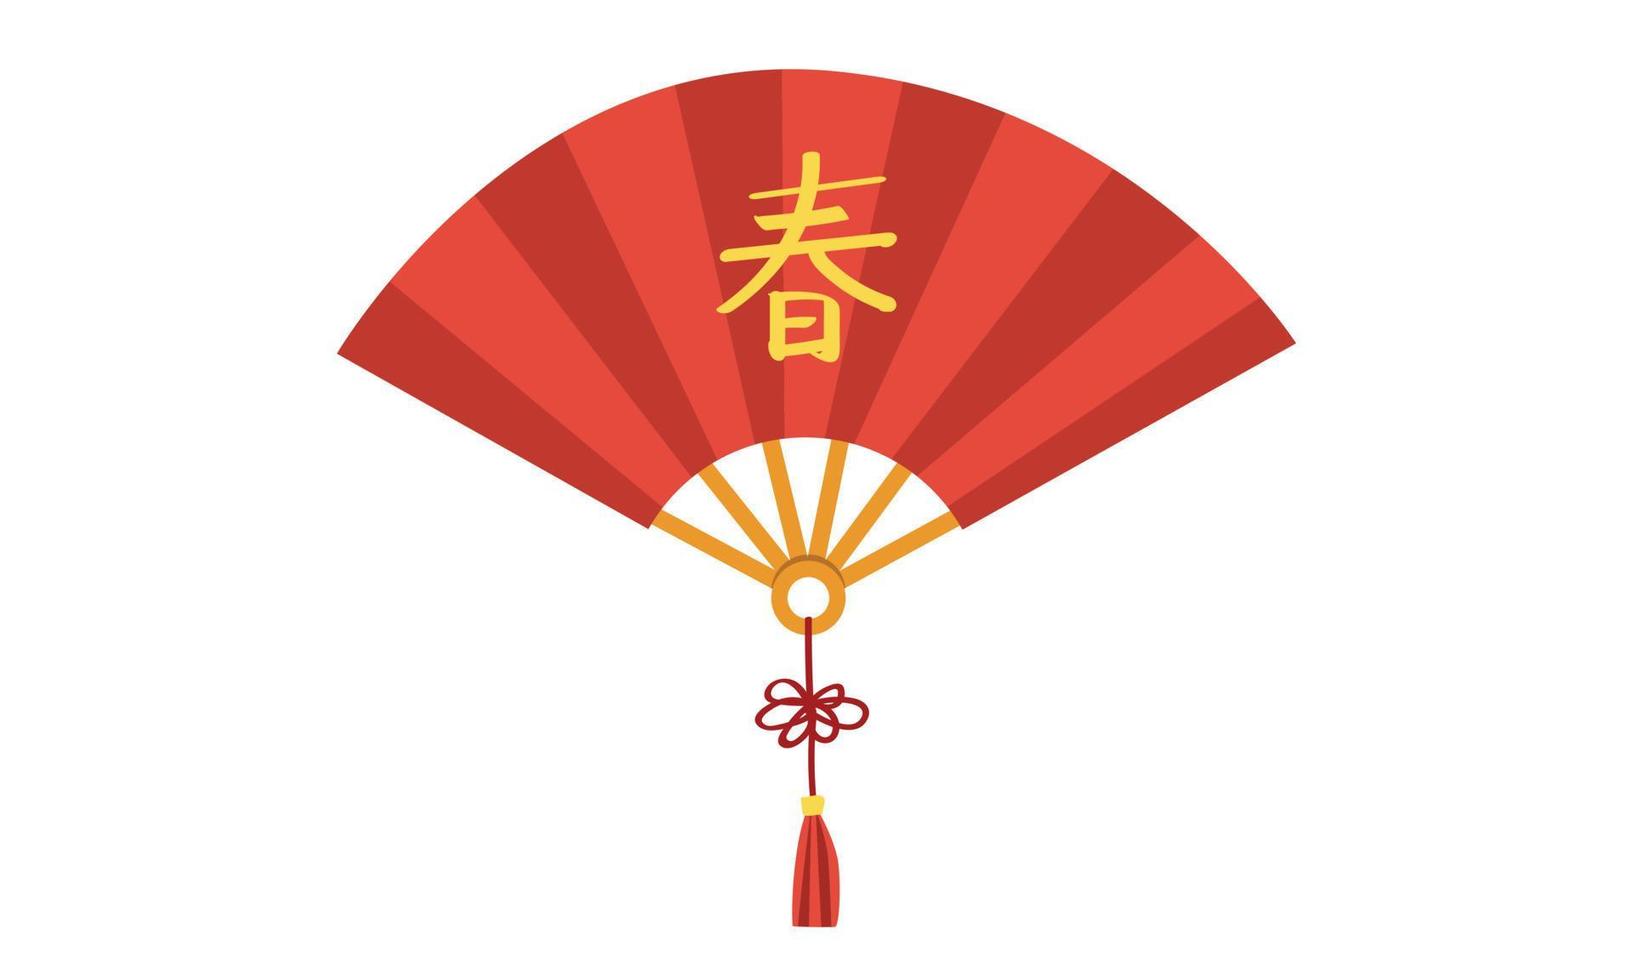 kinesisk ny år fläkt ClipArt. enkel dekorativ kinesisk orientalisk asiatisk stil papper fläkt med tofs platt vektor illustration tecknad serie teckning. kinesisk text betyder vår. Lycklig lunar ny år begrepp